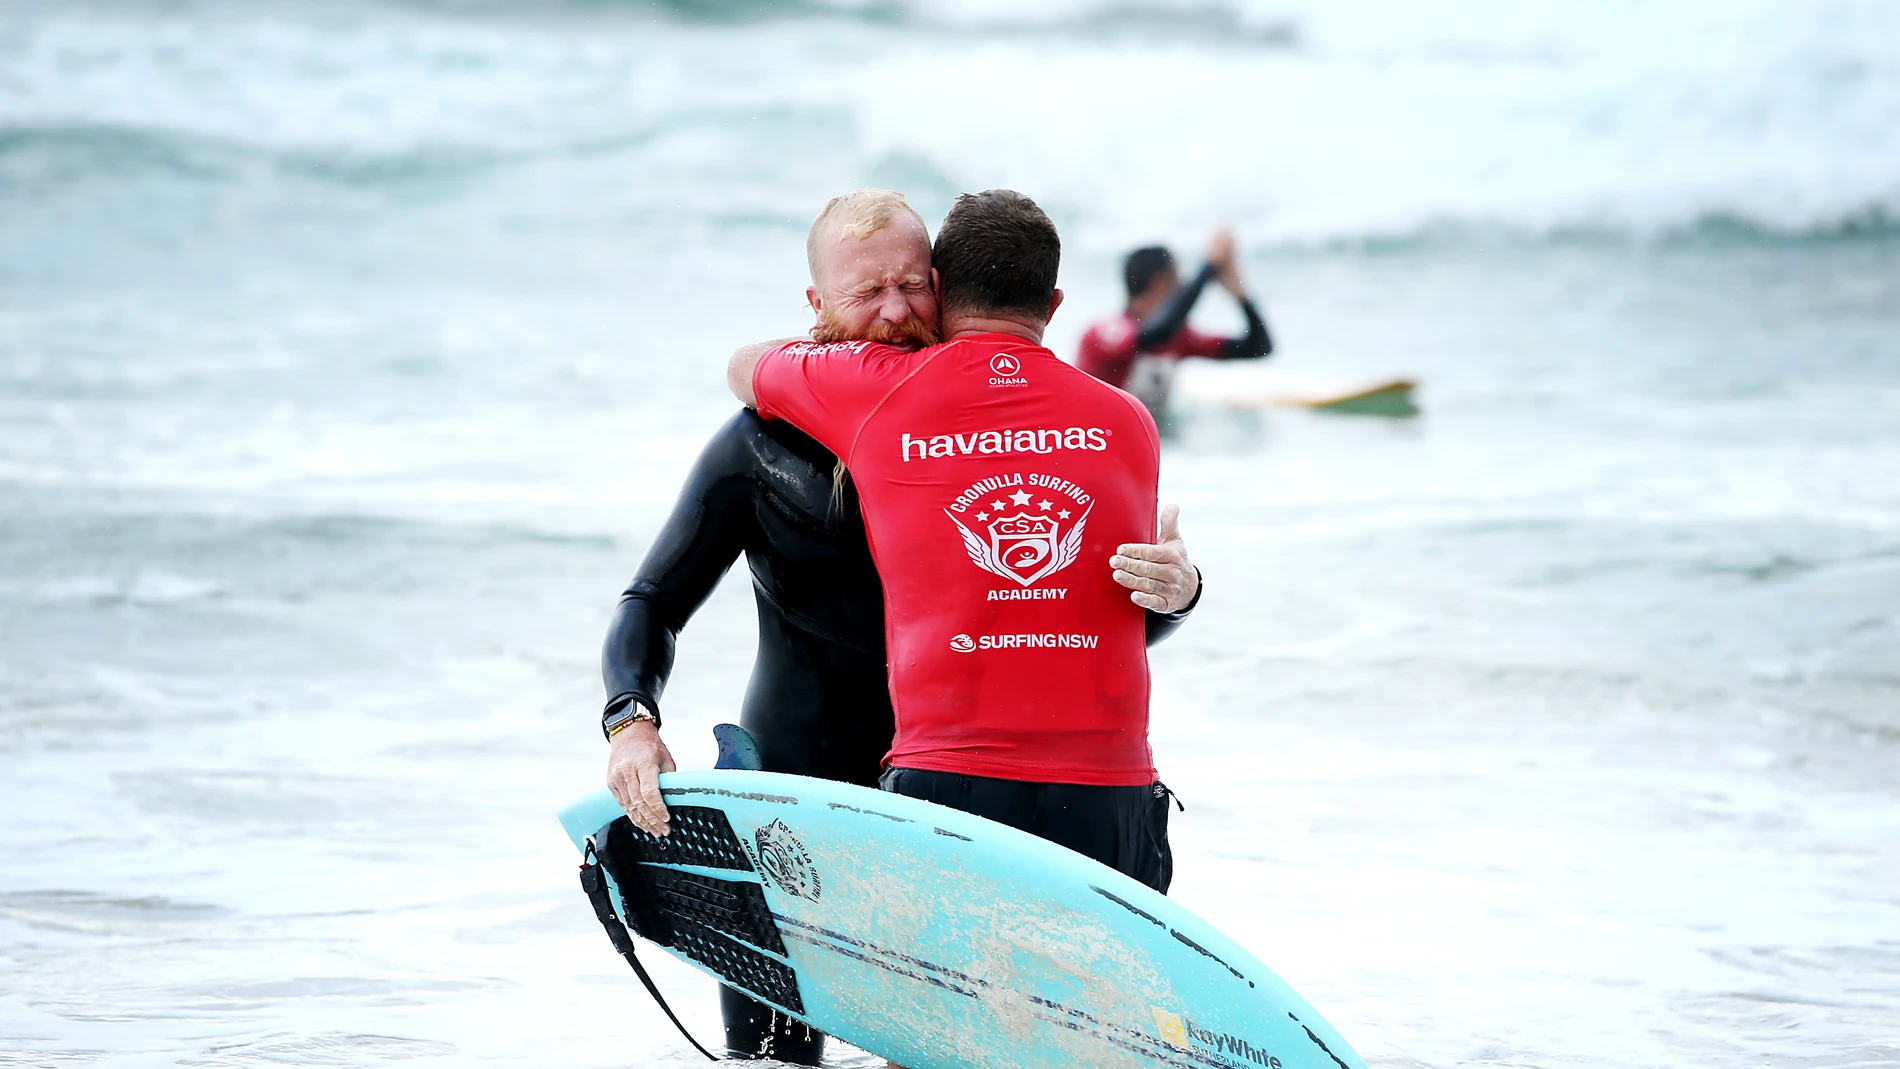 El surfista Blake Johnston es felicitado tras batir el récord del mundo